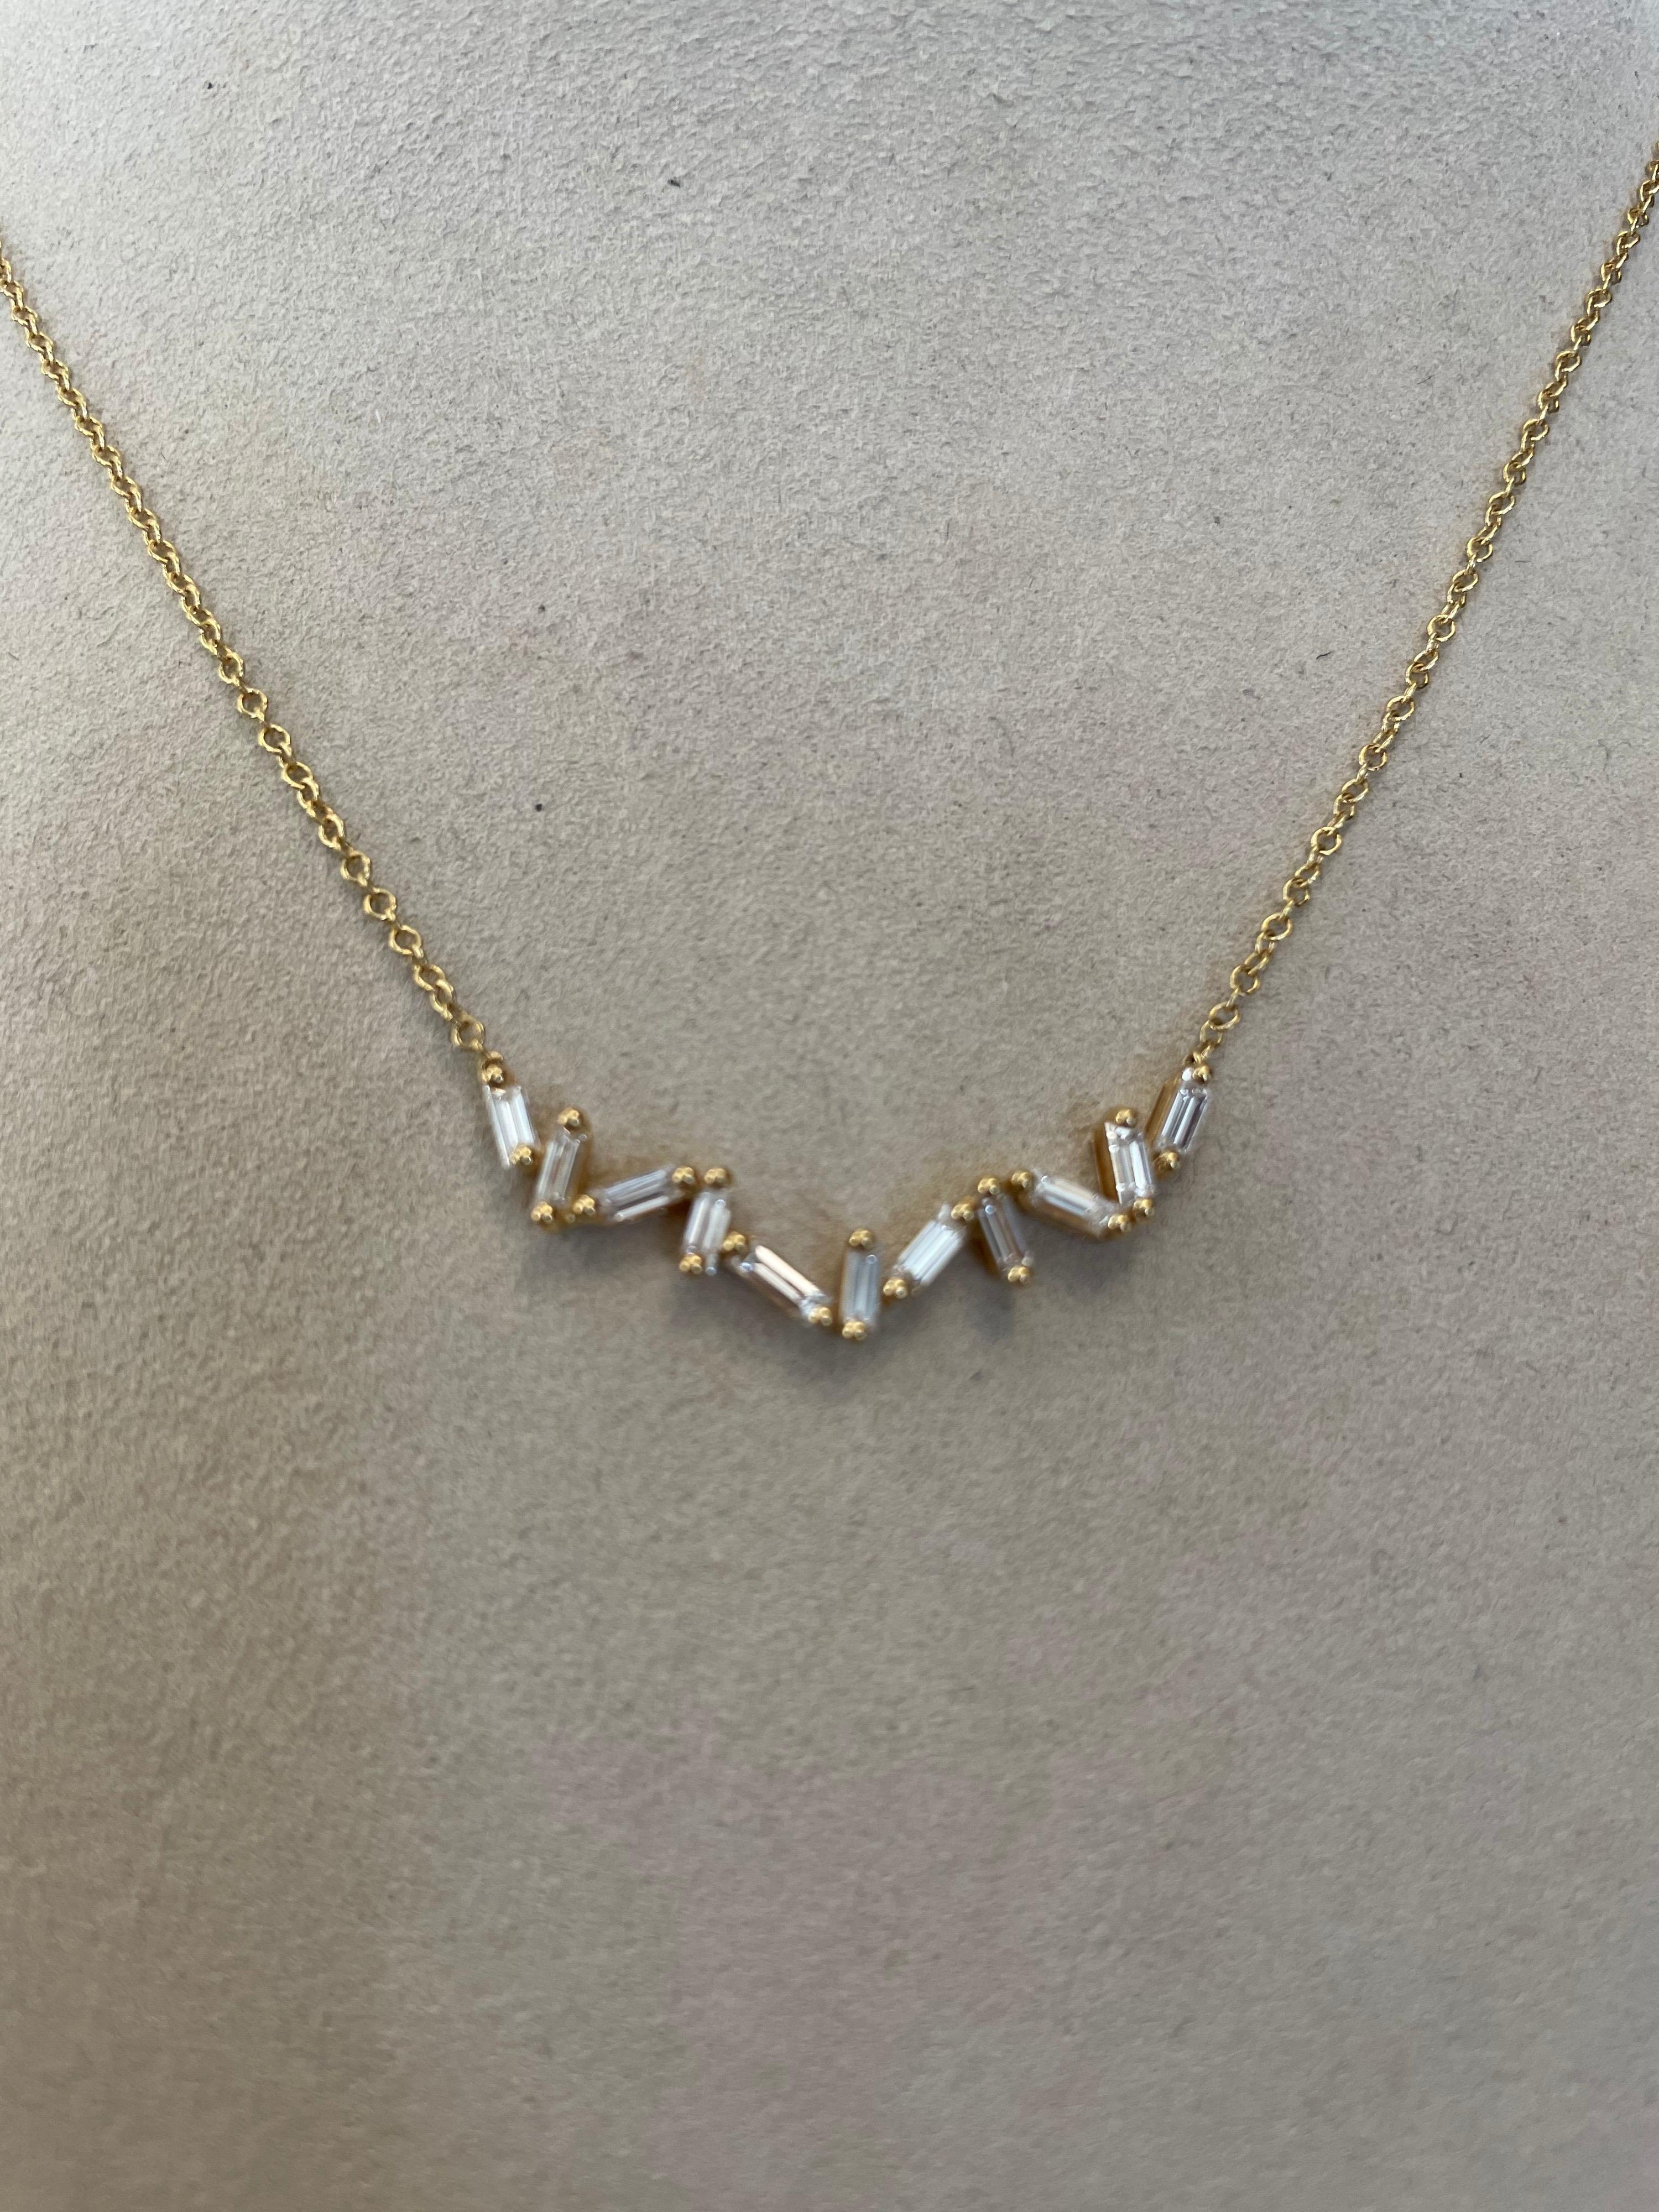 collier en or jaune 18K serti de 11 diamants baguettes droits pesant .64cts au total, dans une orientation abstraite, 16.5 pouces de long.
dernier prix de vente 2000 $